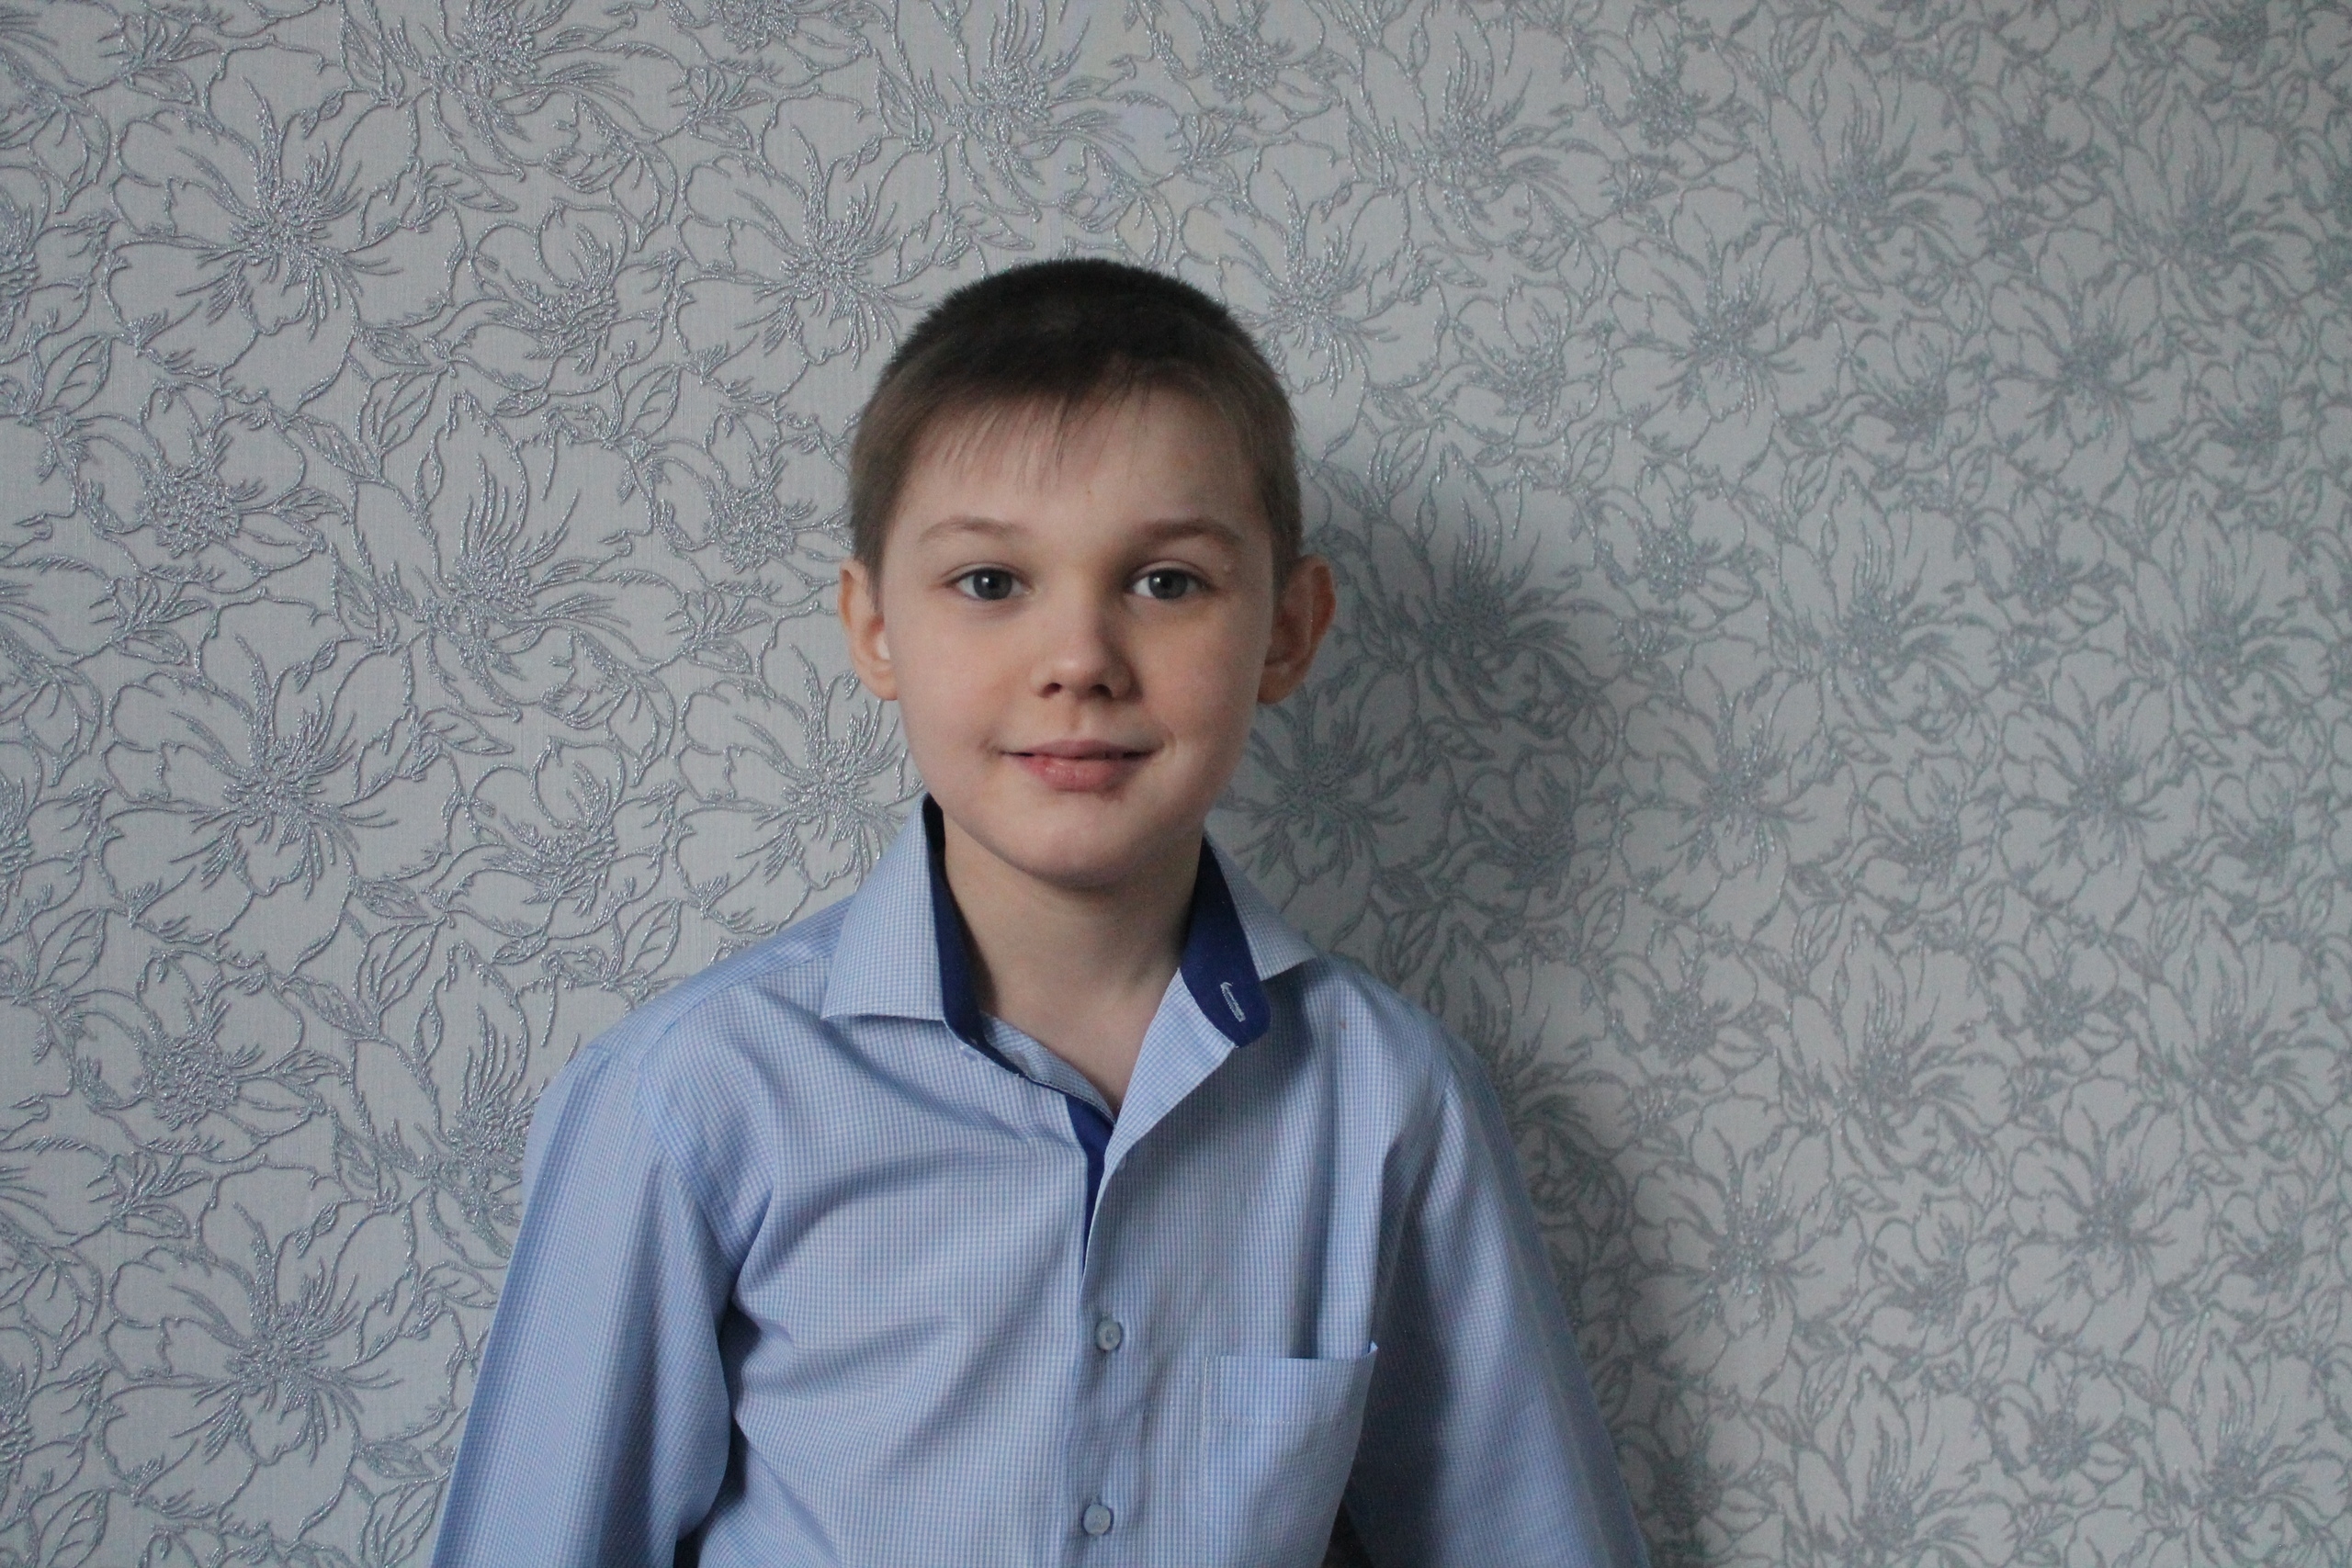 Рудченко Вадиму, 2008 года рождения необходимо срочное оперативное лечение,